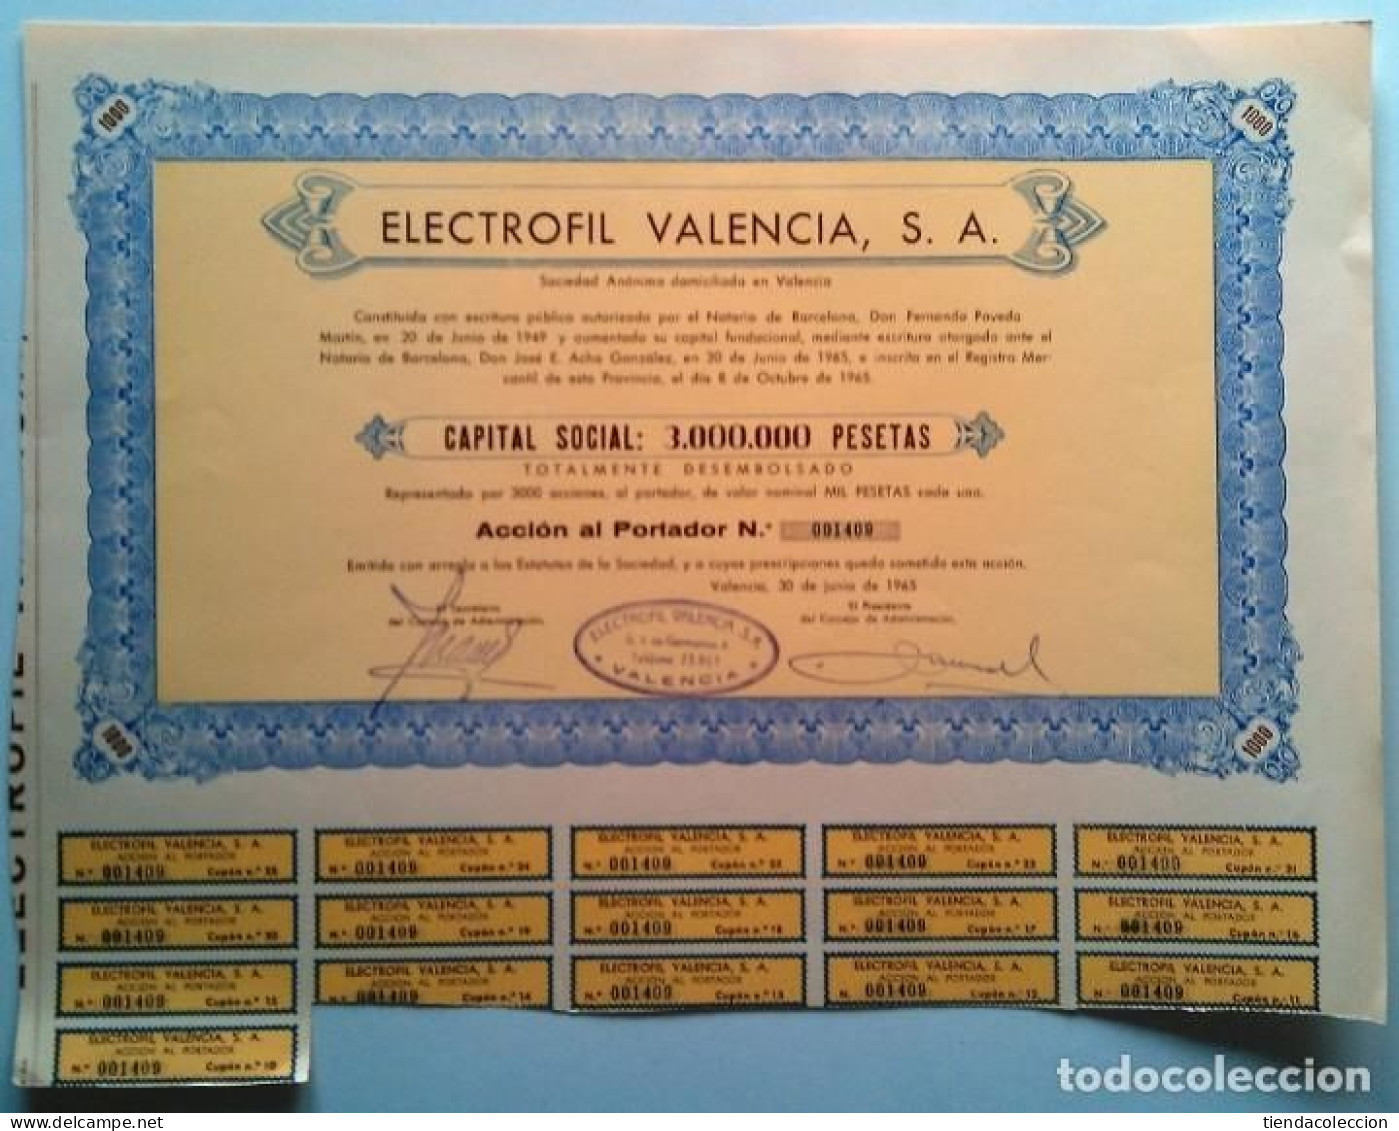 Electrofil Valencia, S. A. - Electricity & Gas